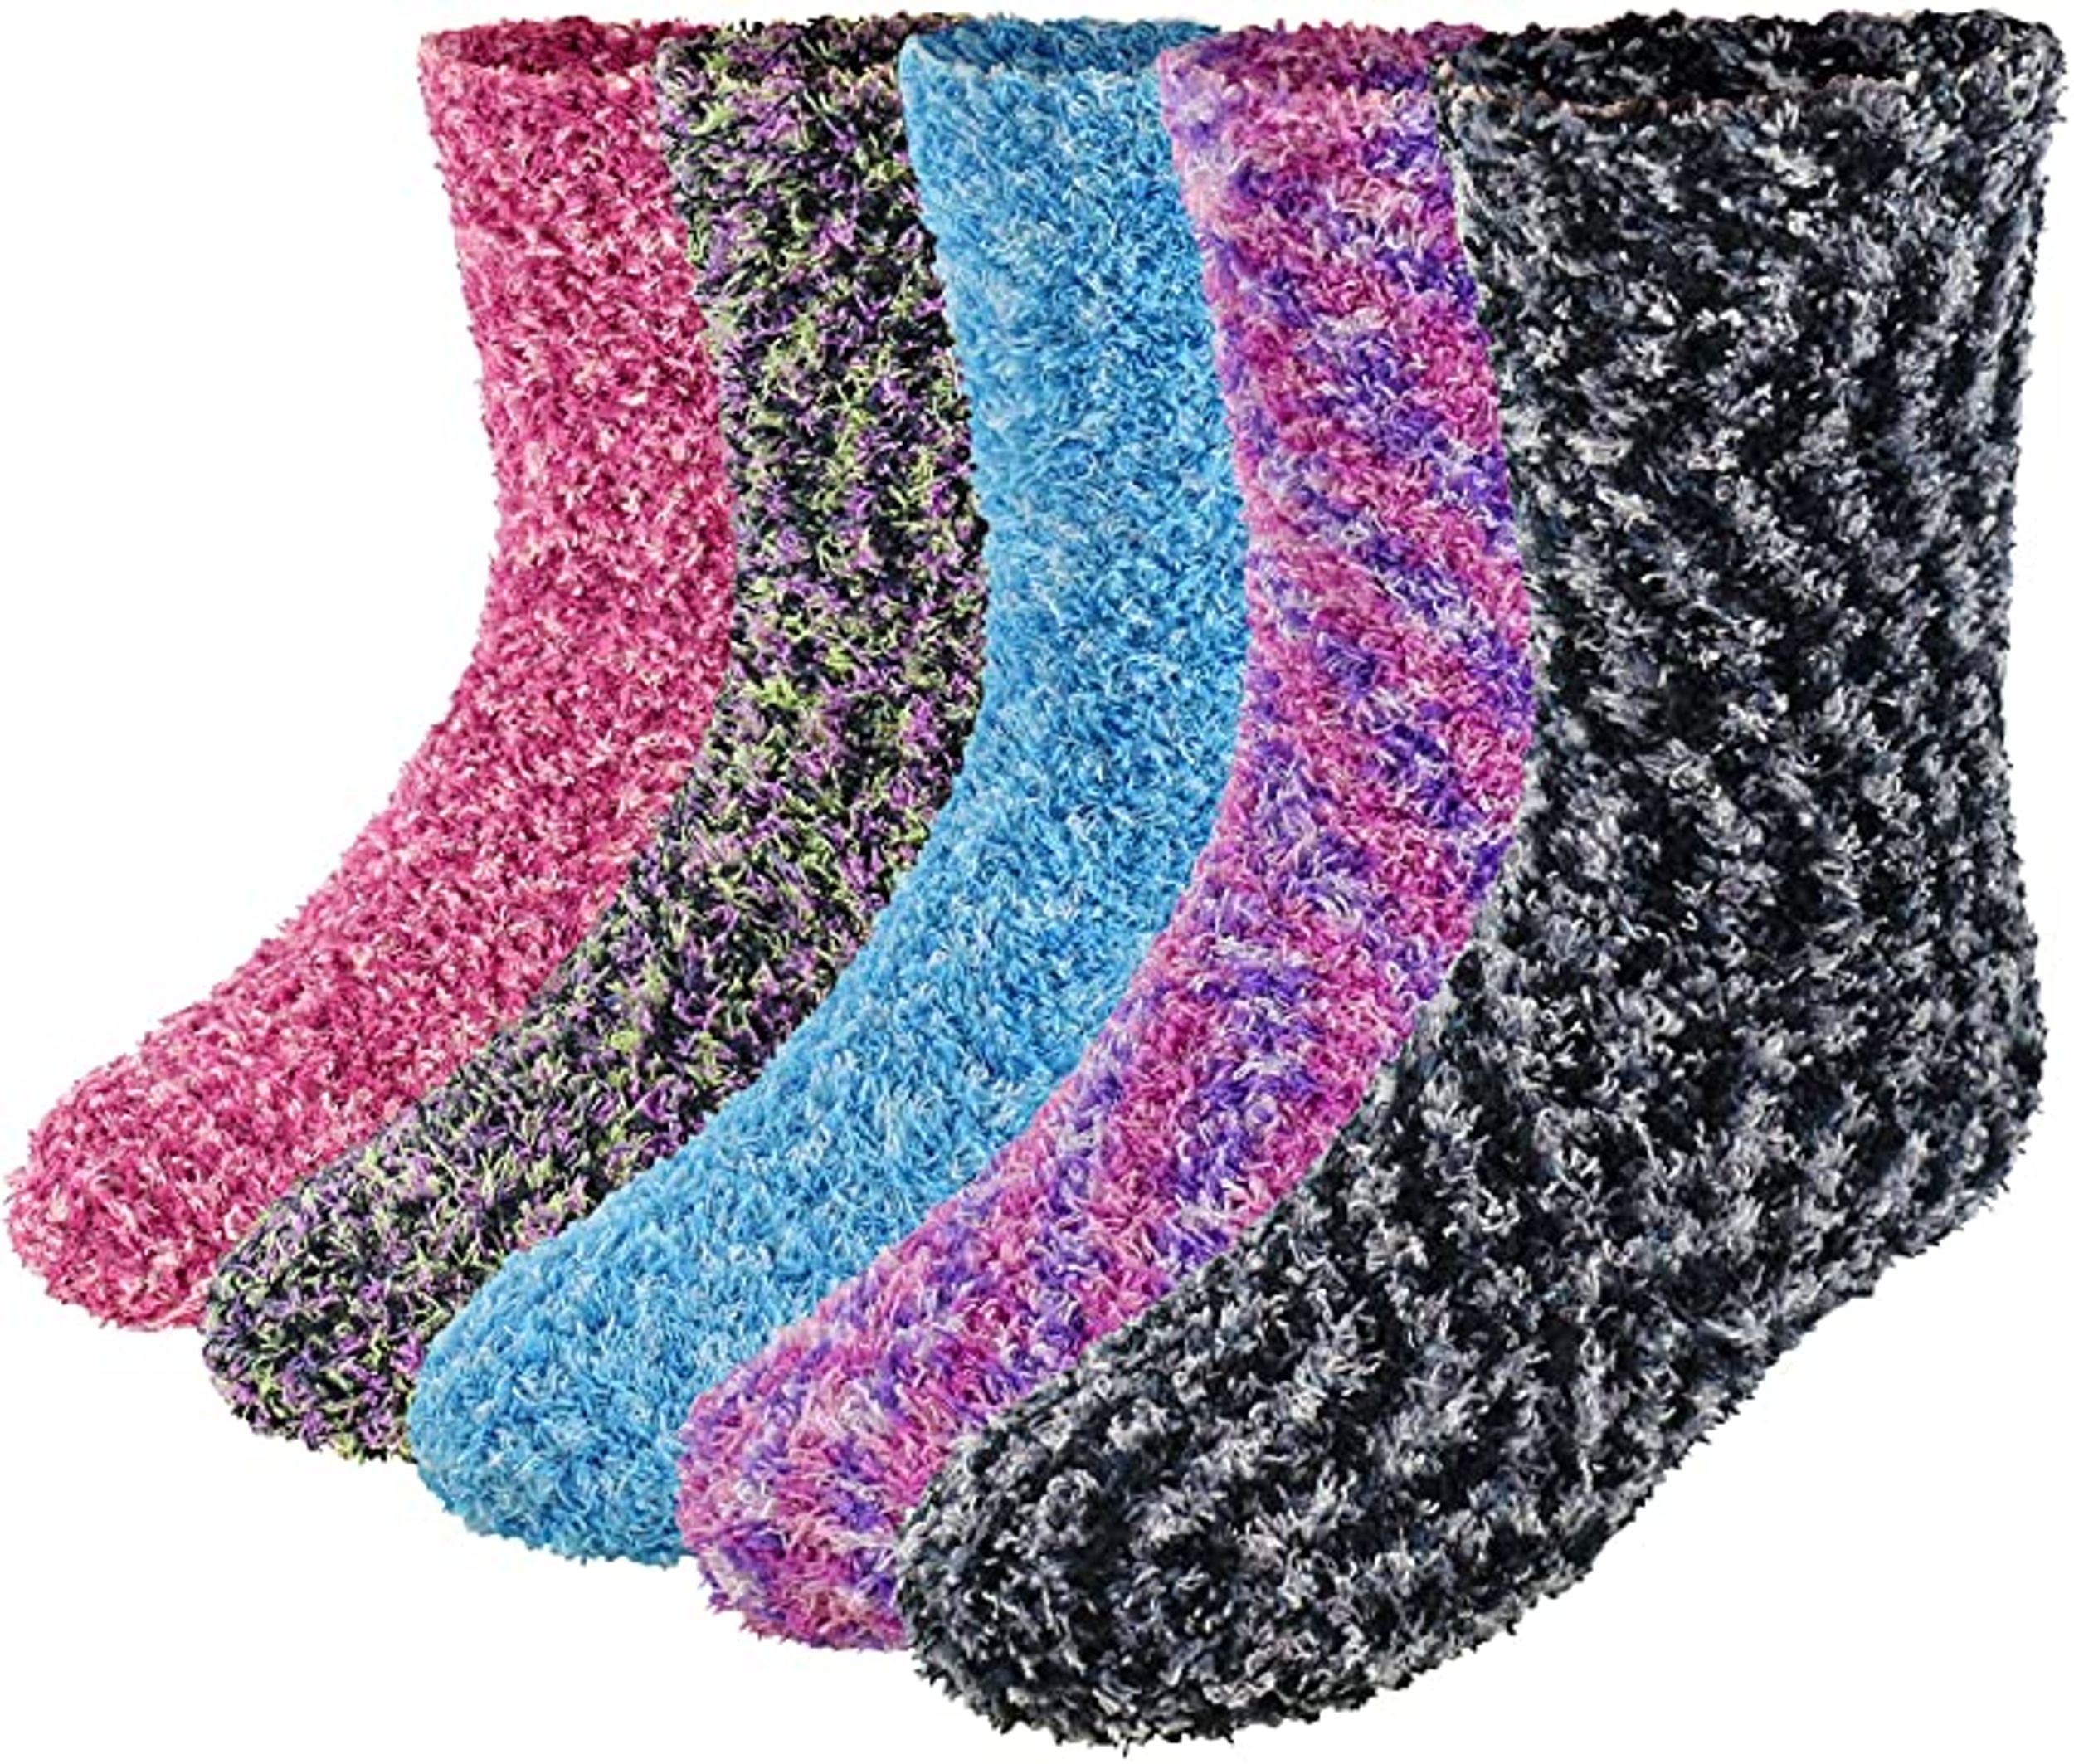 Buy Bulinlulu Fuzzy Socks for Women with Grips,Warm Fuzzy Socks